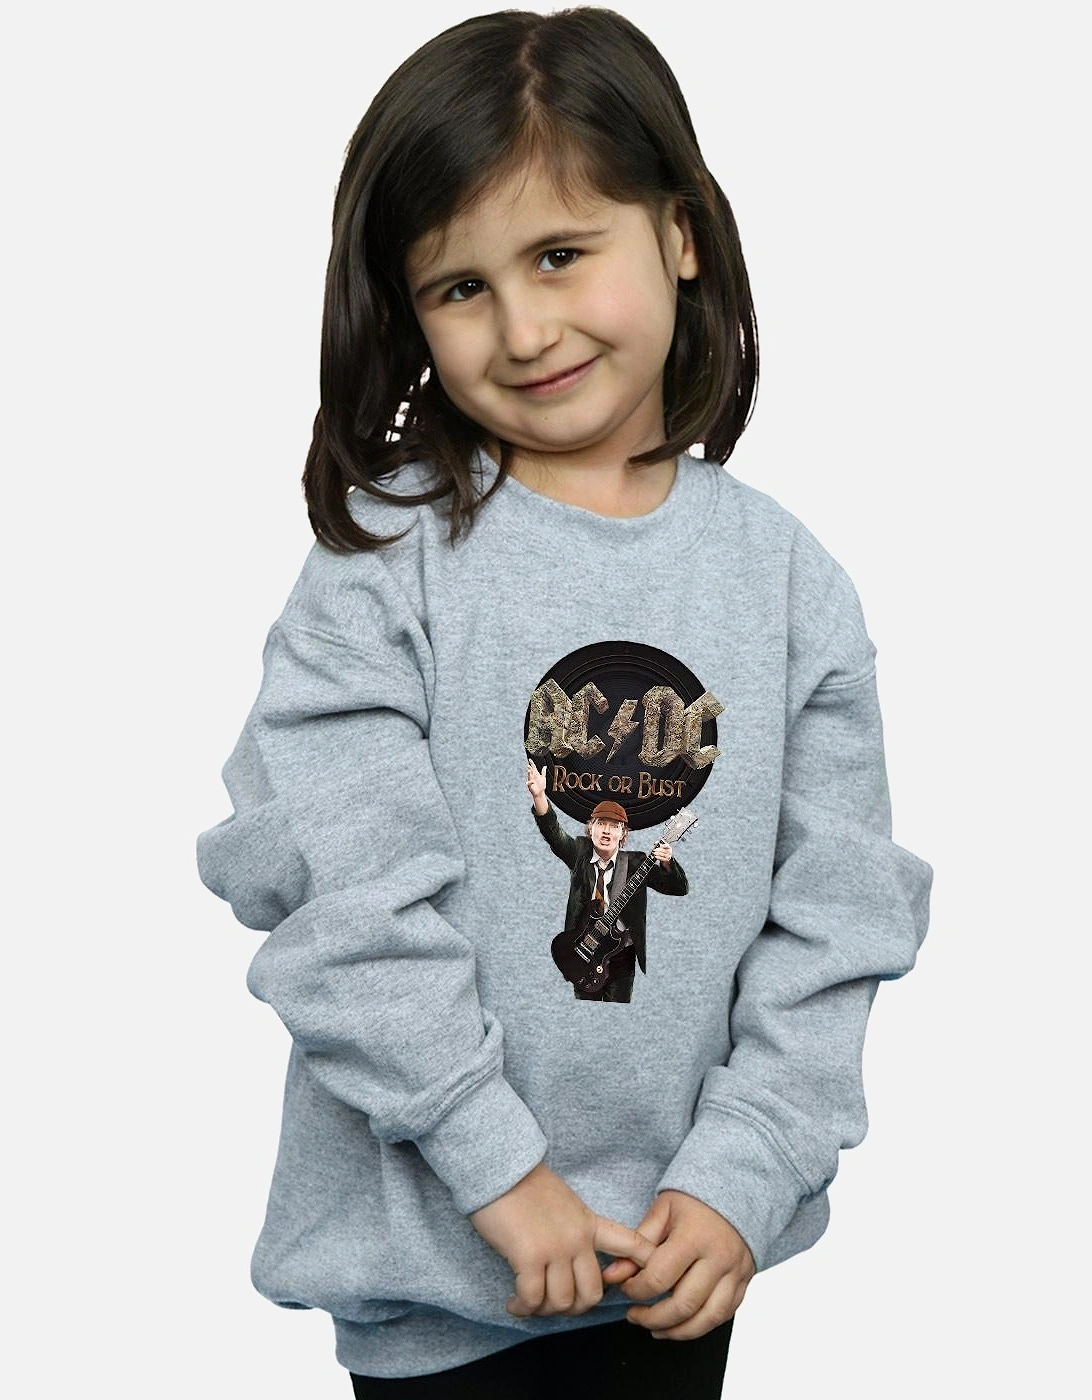 Girls Rock Or Bust Angus Young Sweatshirt